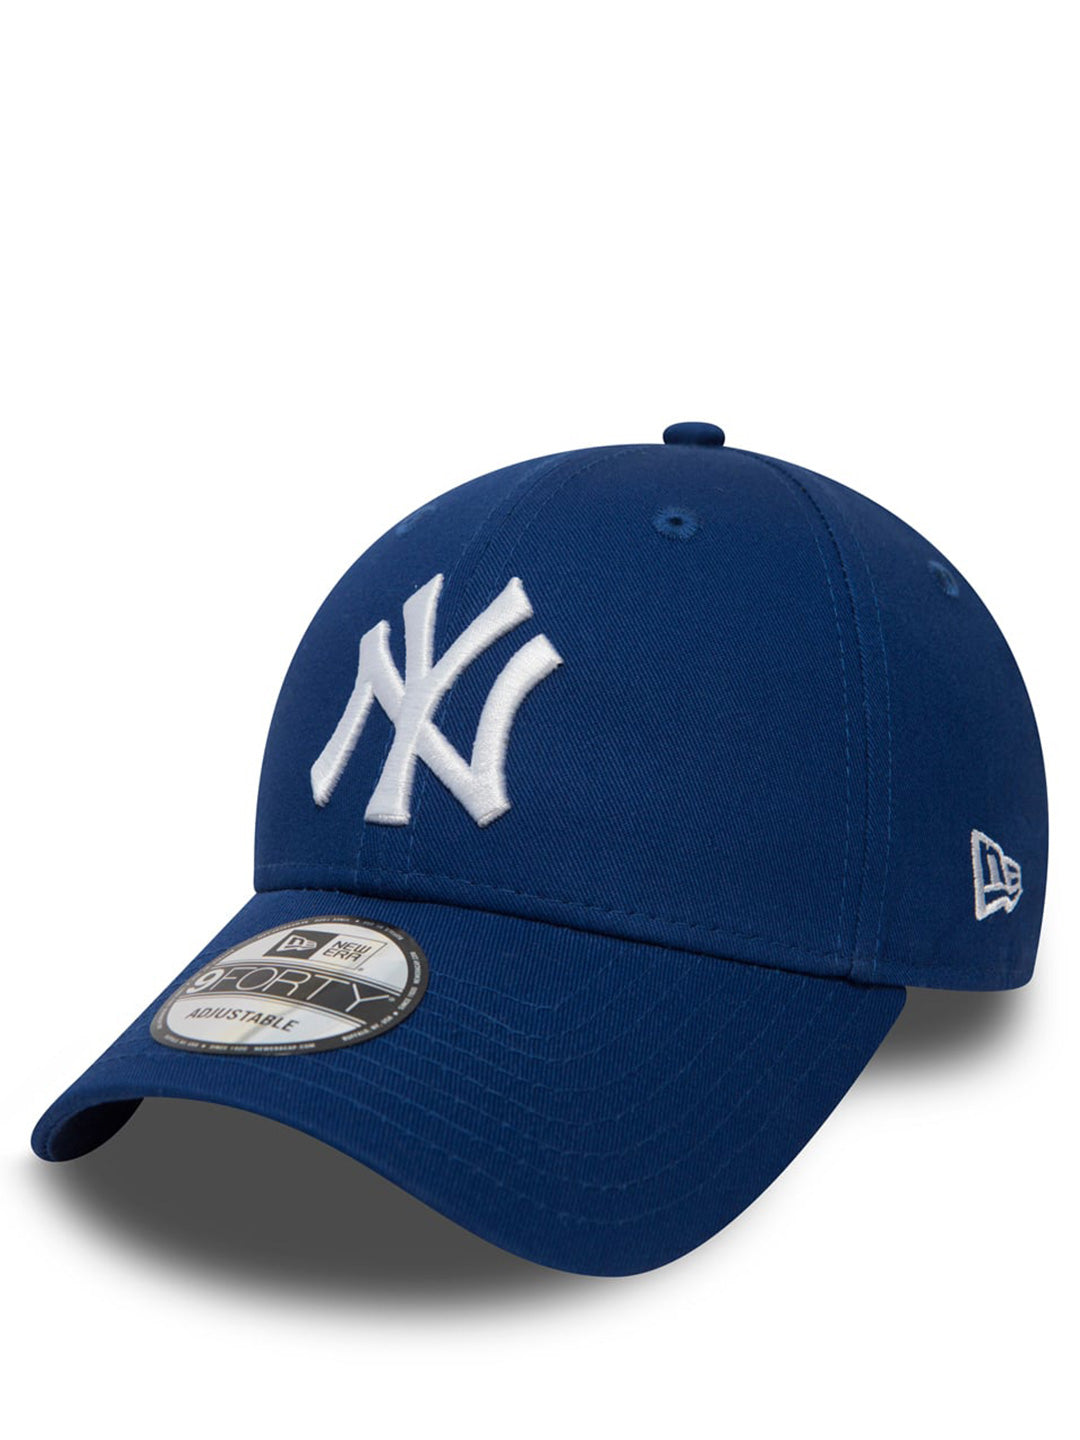 New Era 9FORTY cappello blu royal con logo bianco